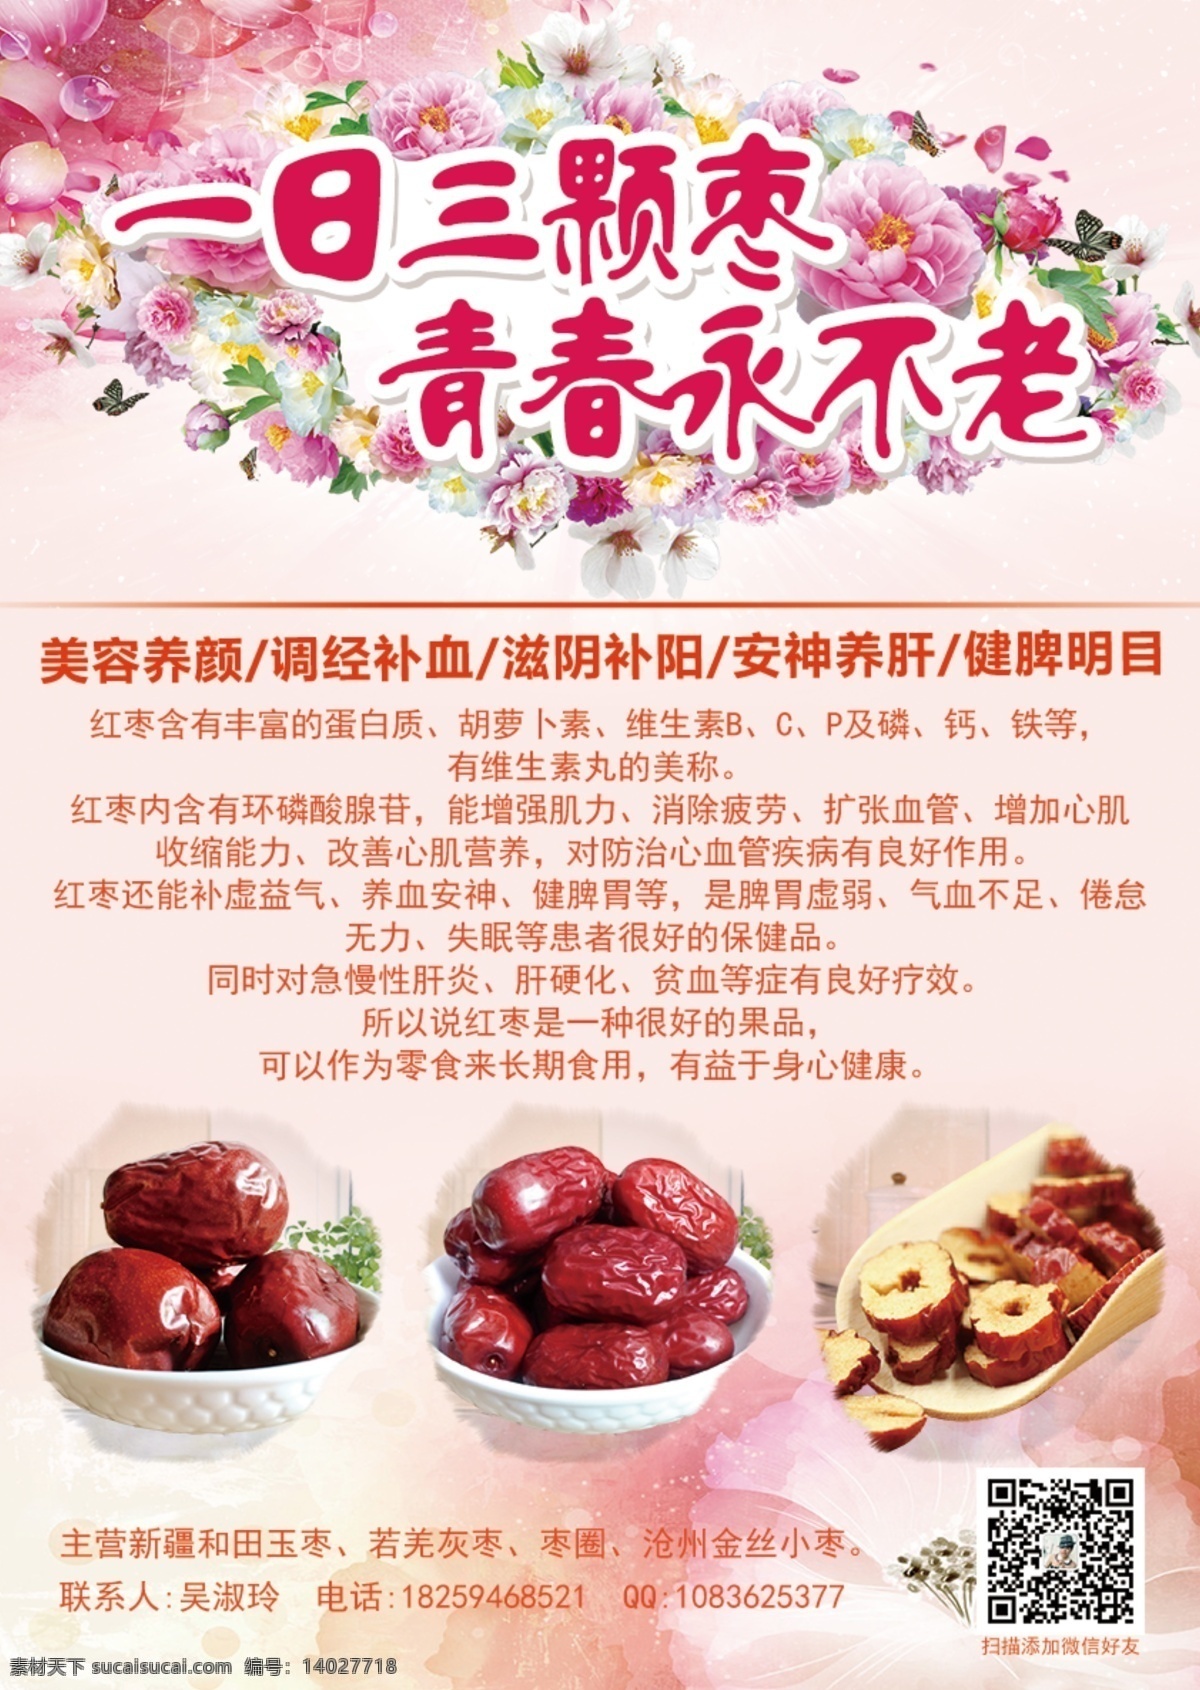 红枣宣传海报 红枣 宣传 海报 淘宝素材 淘宝设计 淘宝模板下载 白色